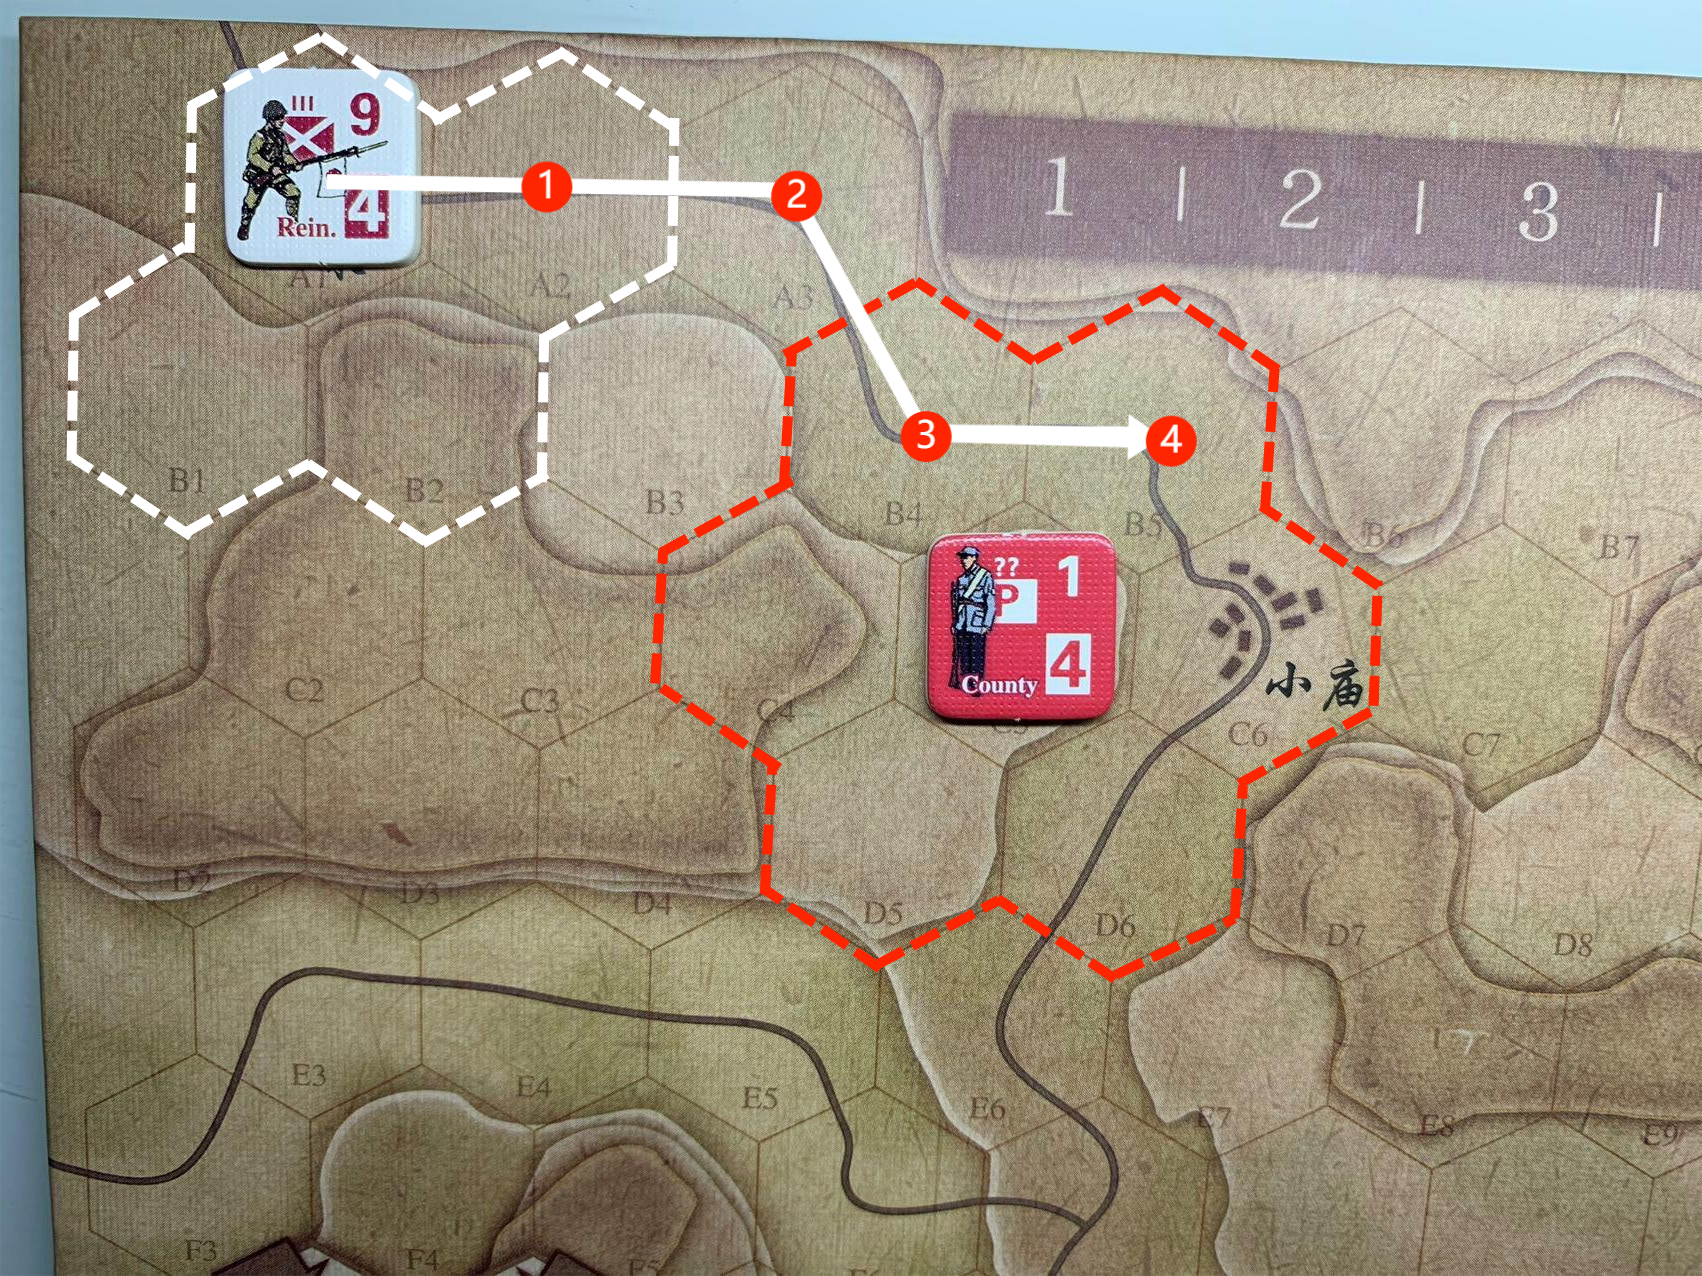 繼續使用同一個例子，假設現在是日軍移動階段，圖中左上方的日軍增援部隊計劃按照箭頭方向，沿道路移動4格，預計消耗全部移動力（算子右下方紅底白字的“4”）後將停留在B5